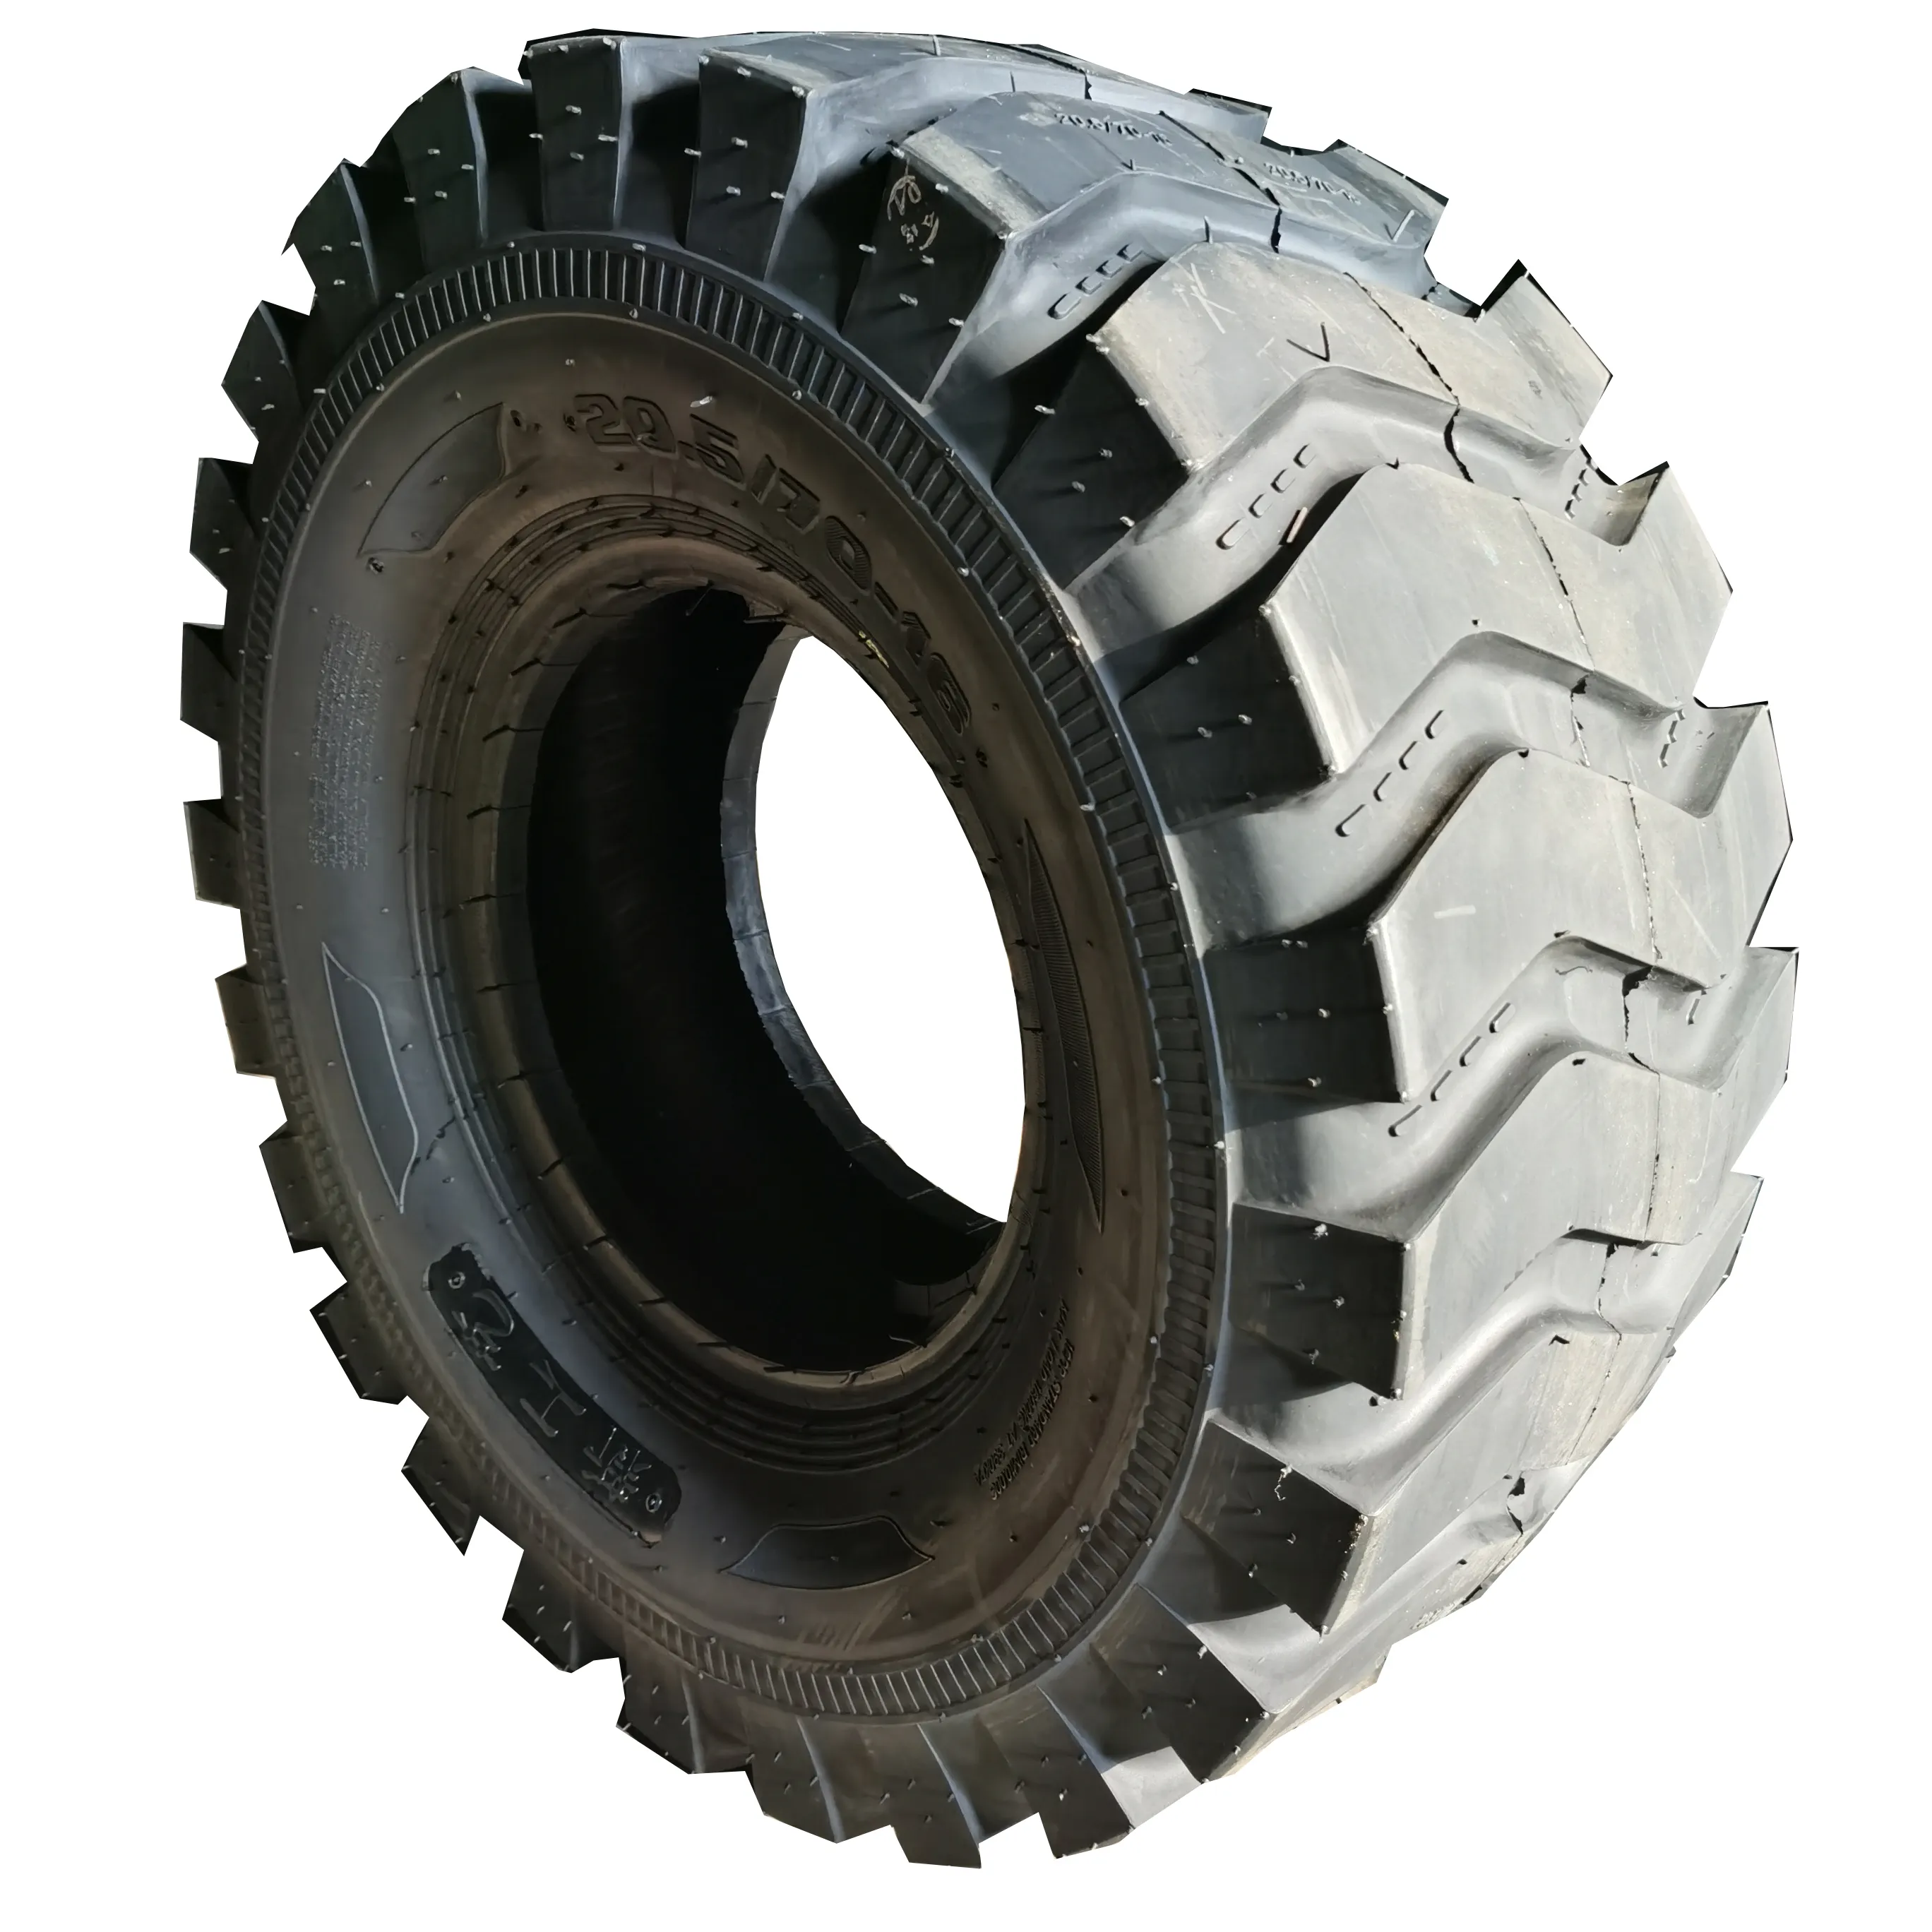 Commerci all'ingrosso pneumatici fuoristrada pneumatici per camion Greamark pneumatico per camion di alta qualità 20.5/70-16